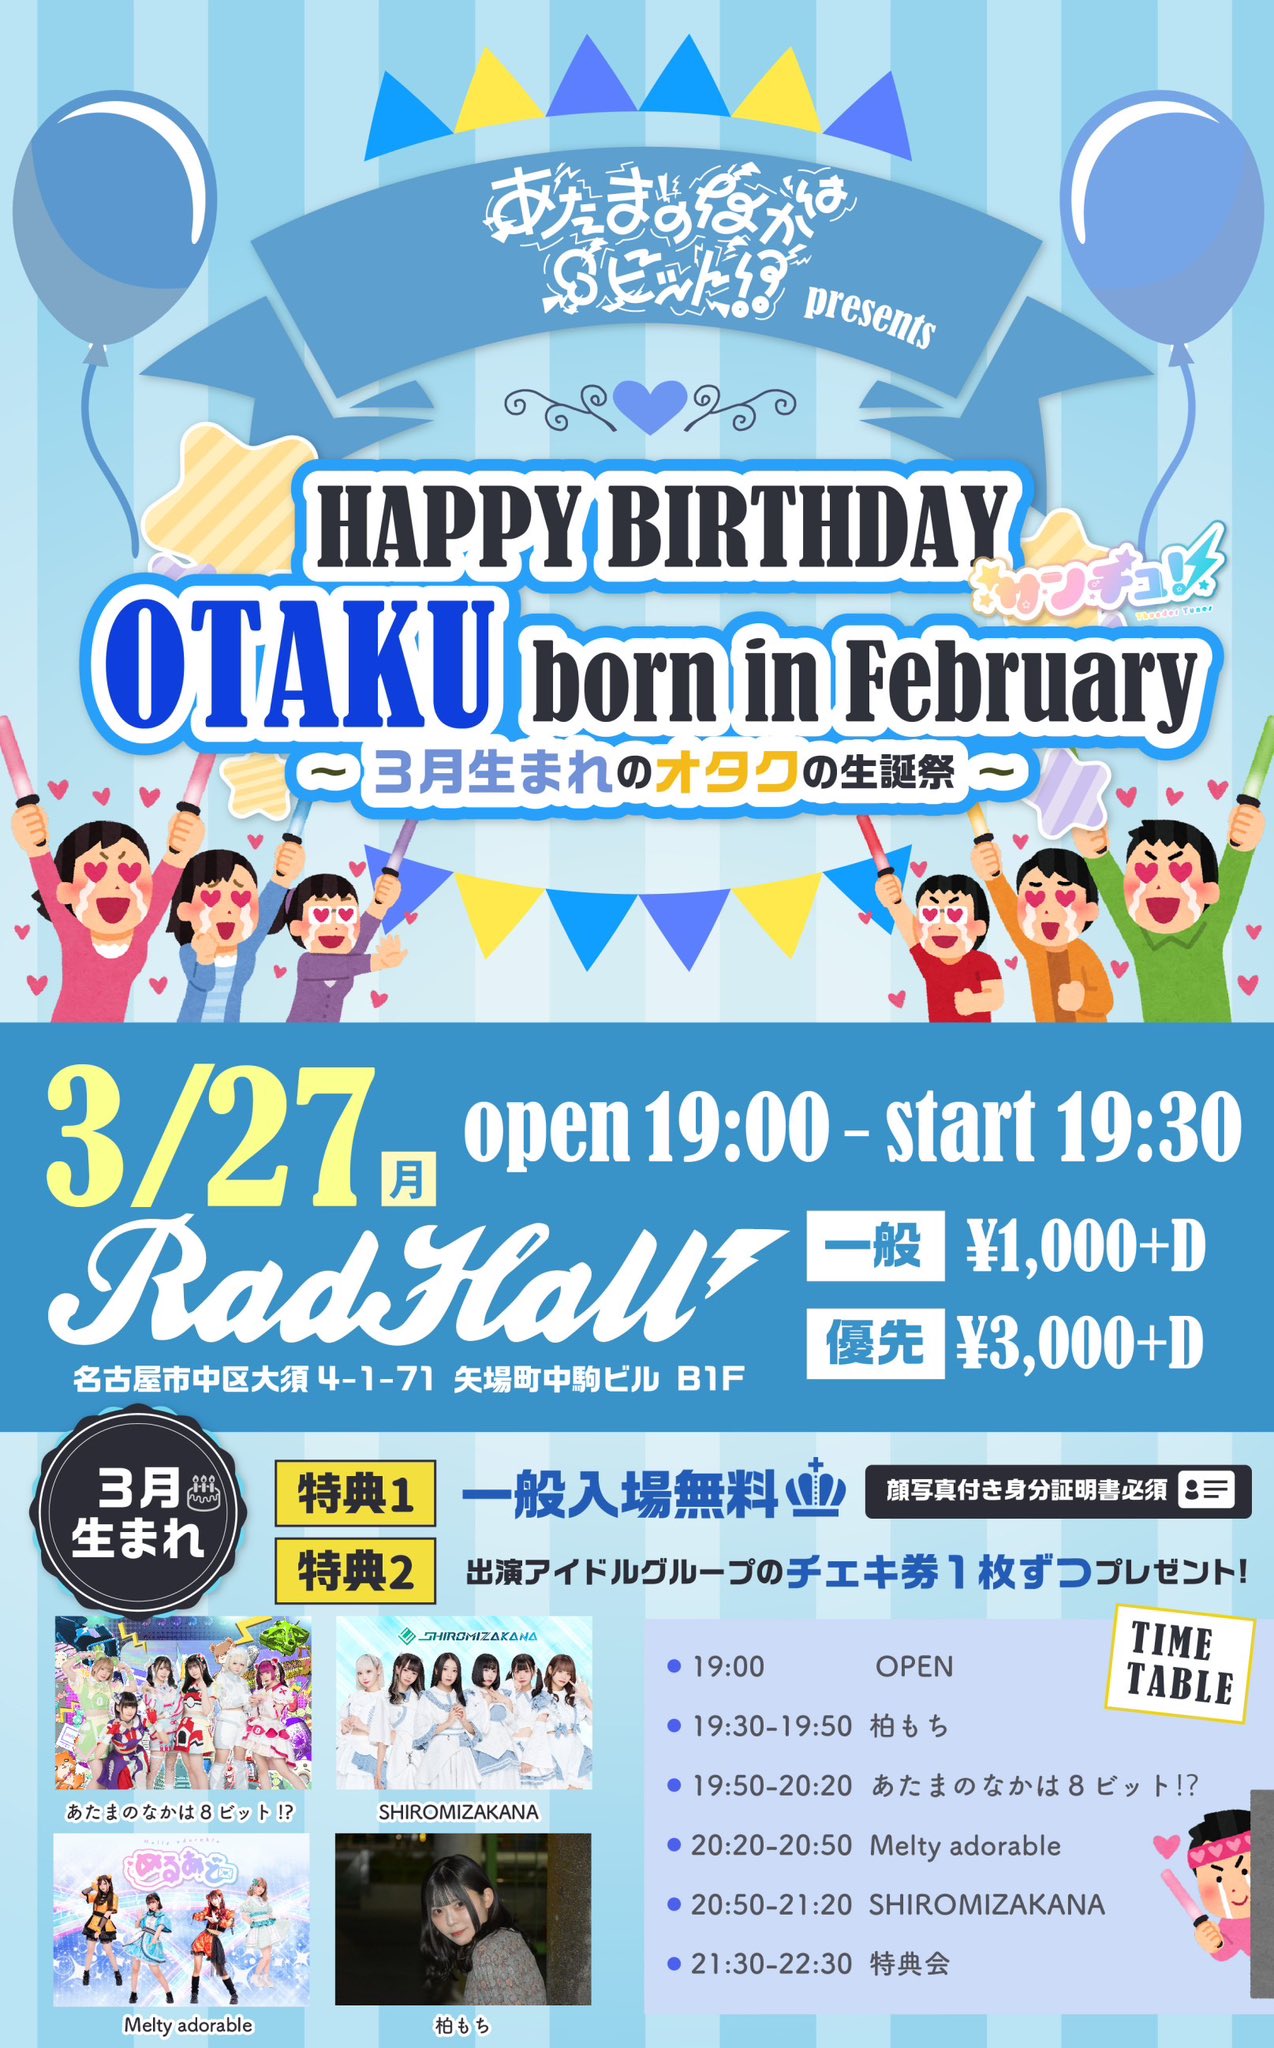 あたまのなかは8ビットpre.HAPPY BIRTHDAY OTAKU born in February〜3月生まれのオタクの生誕祭〜